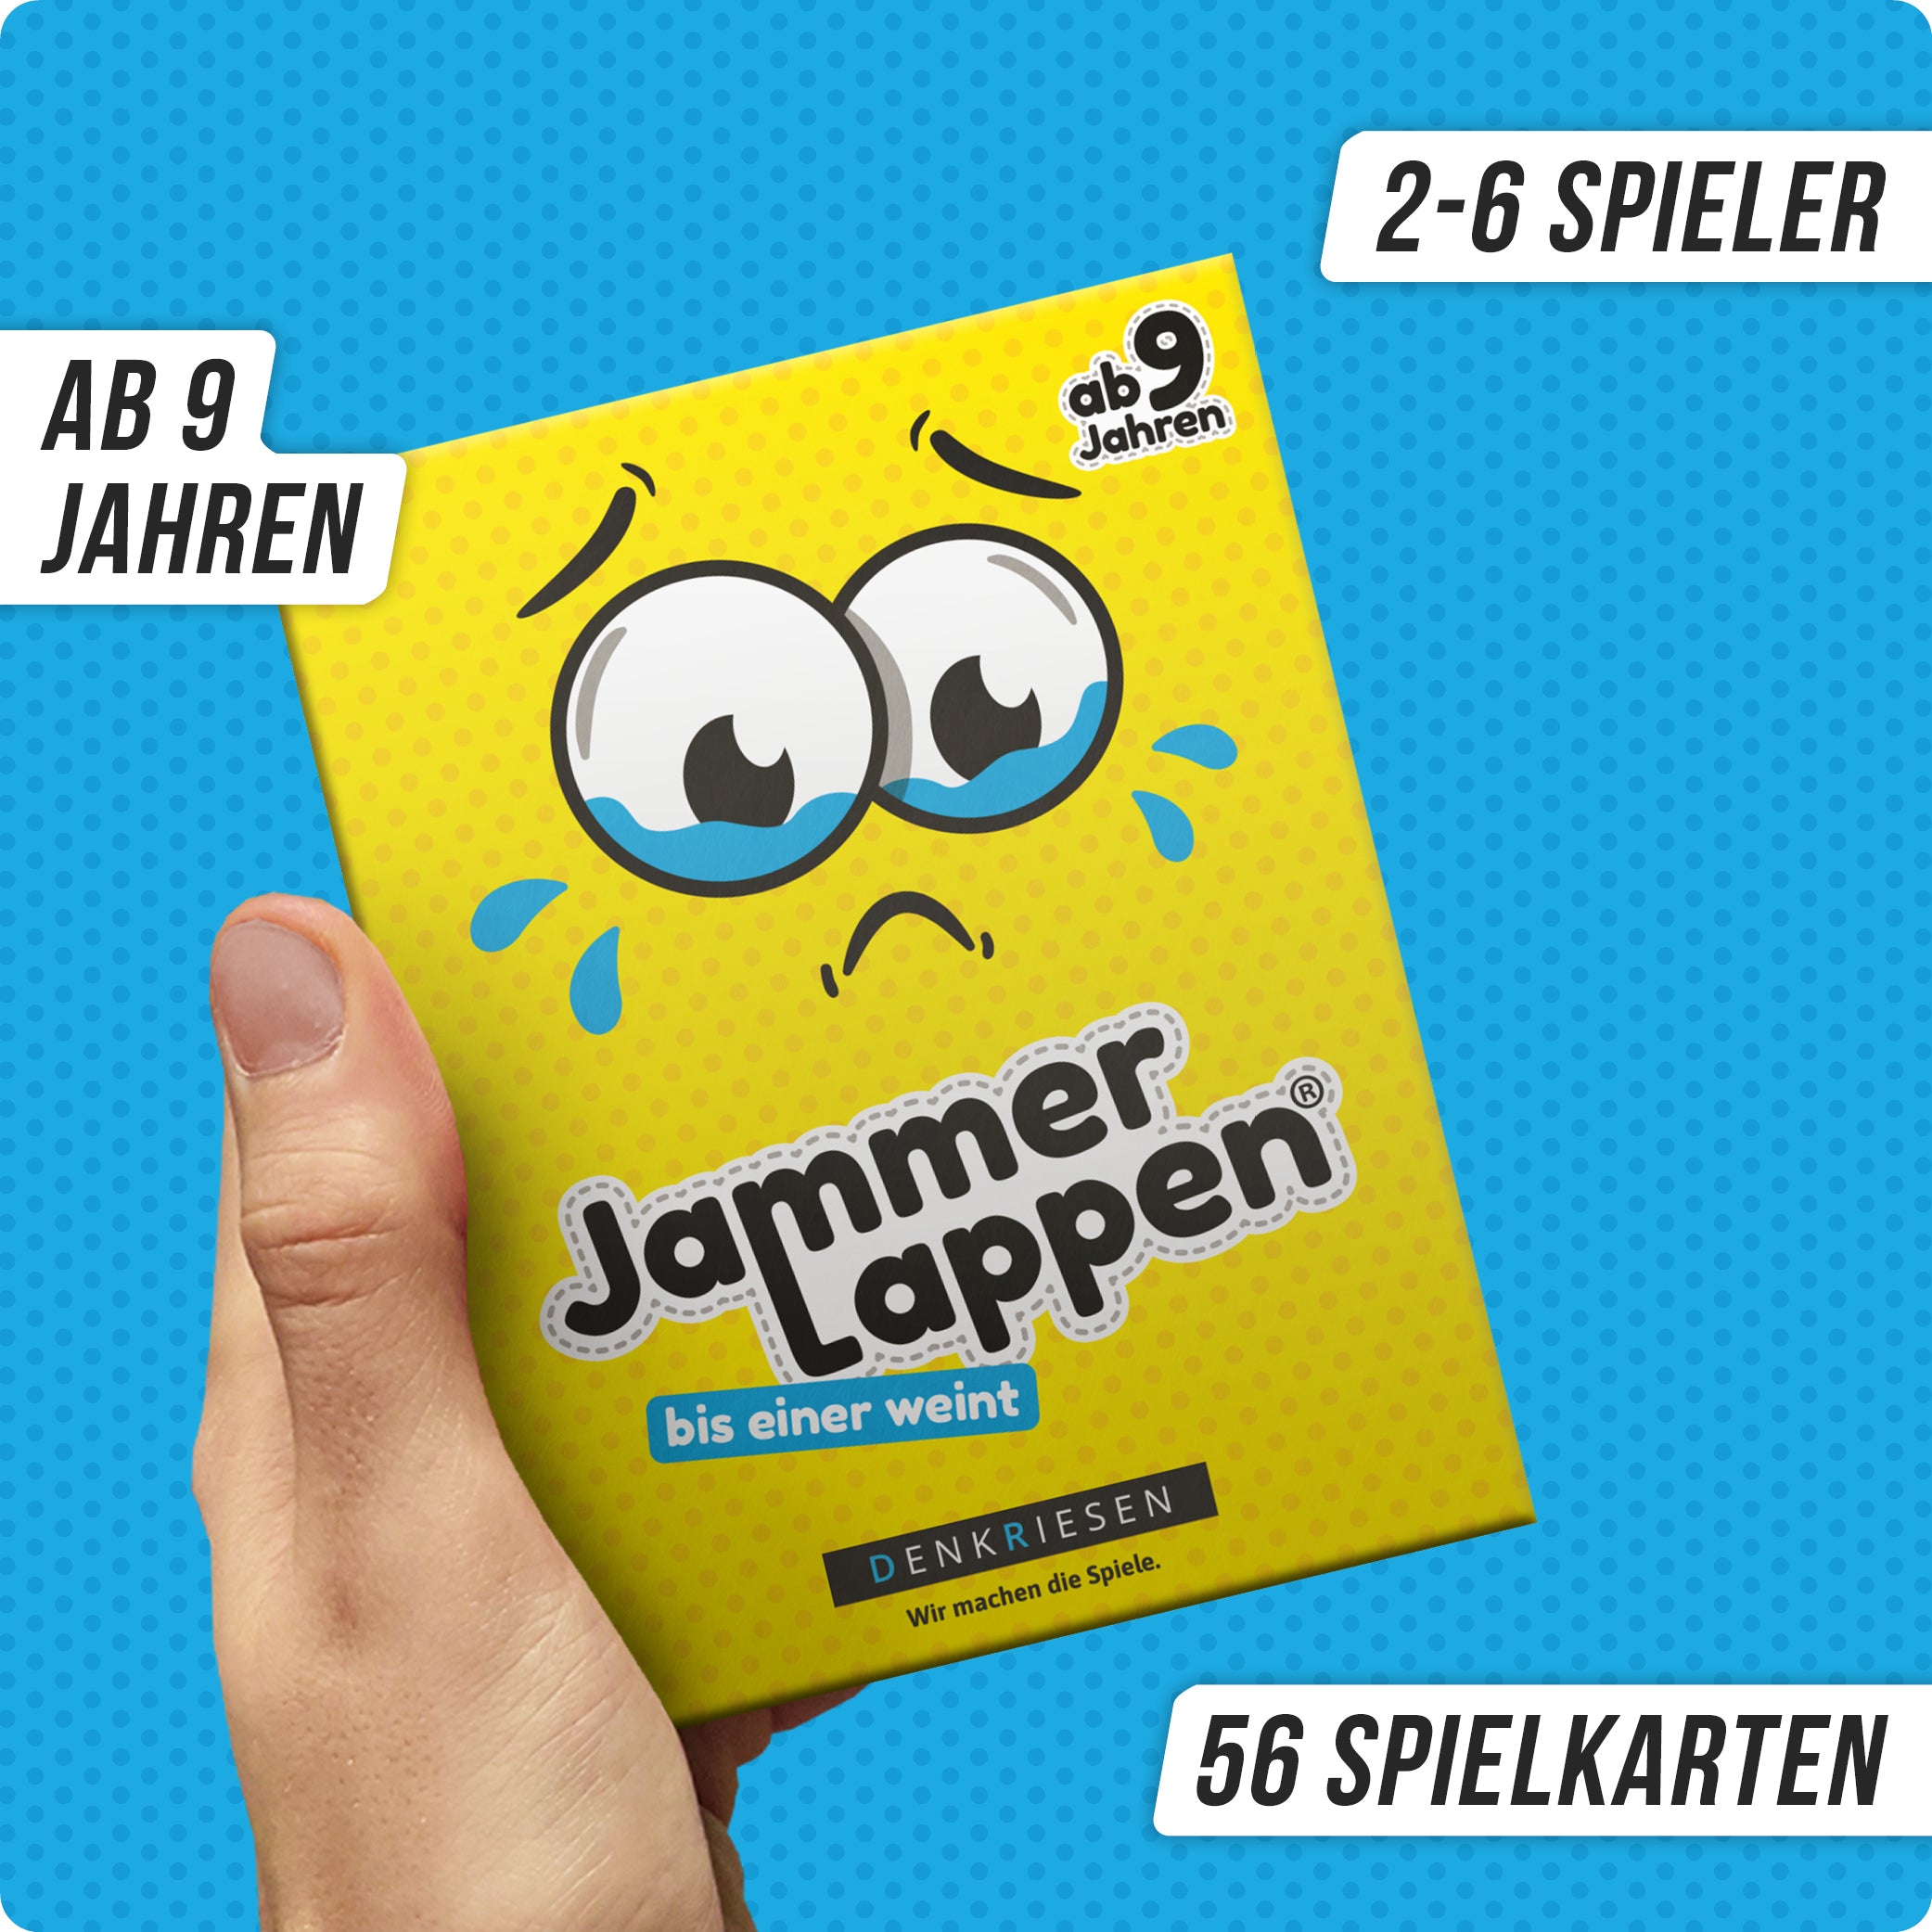 JAMMERLAPPEN® | Standard Edition – "Bis einer weint."